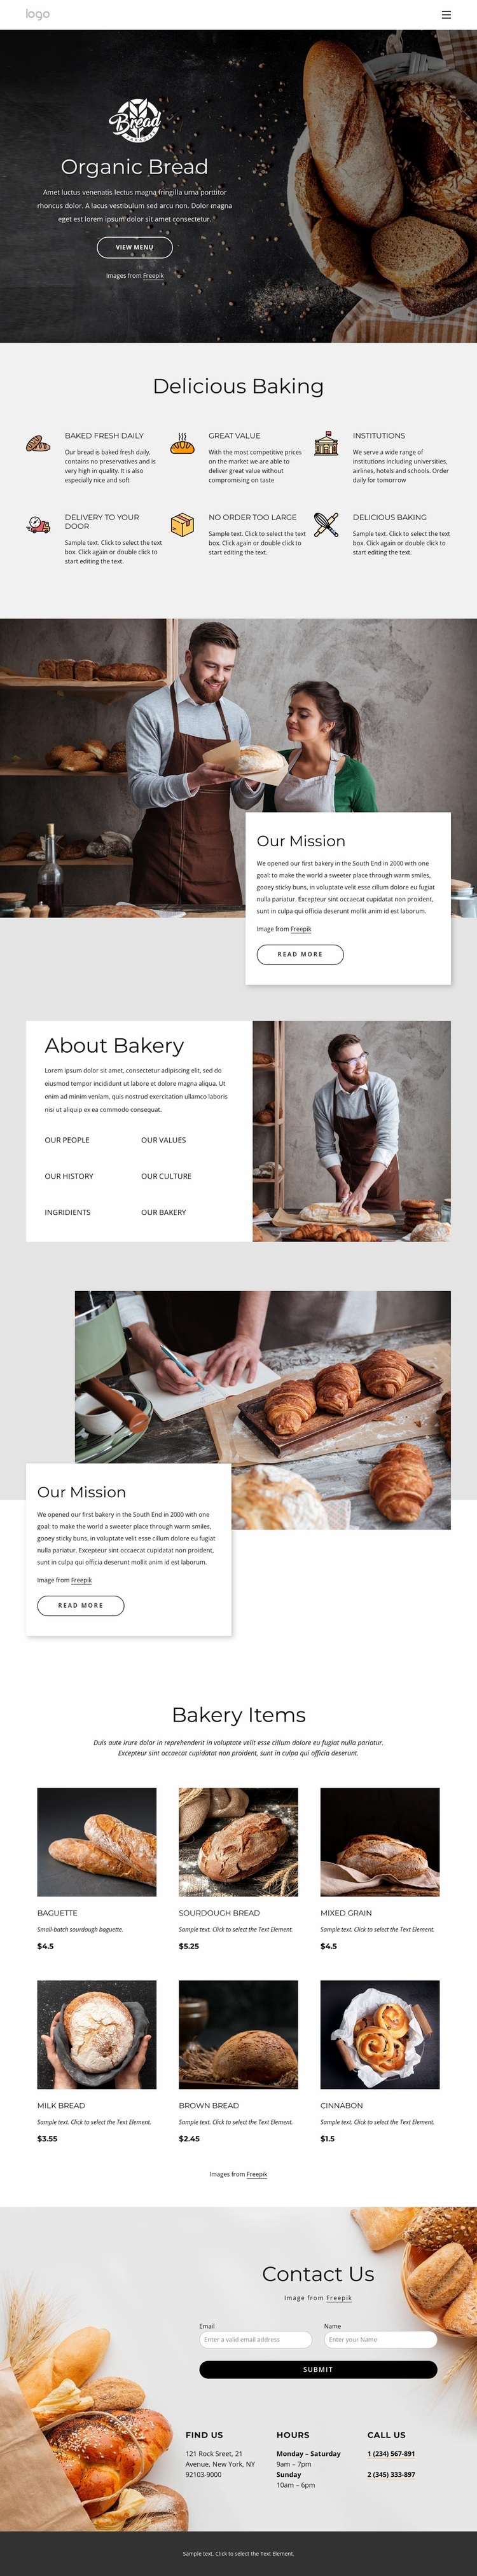 Bagels, buns, rolls, biscuits and loaf breads Website Design